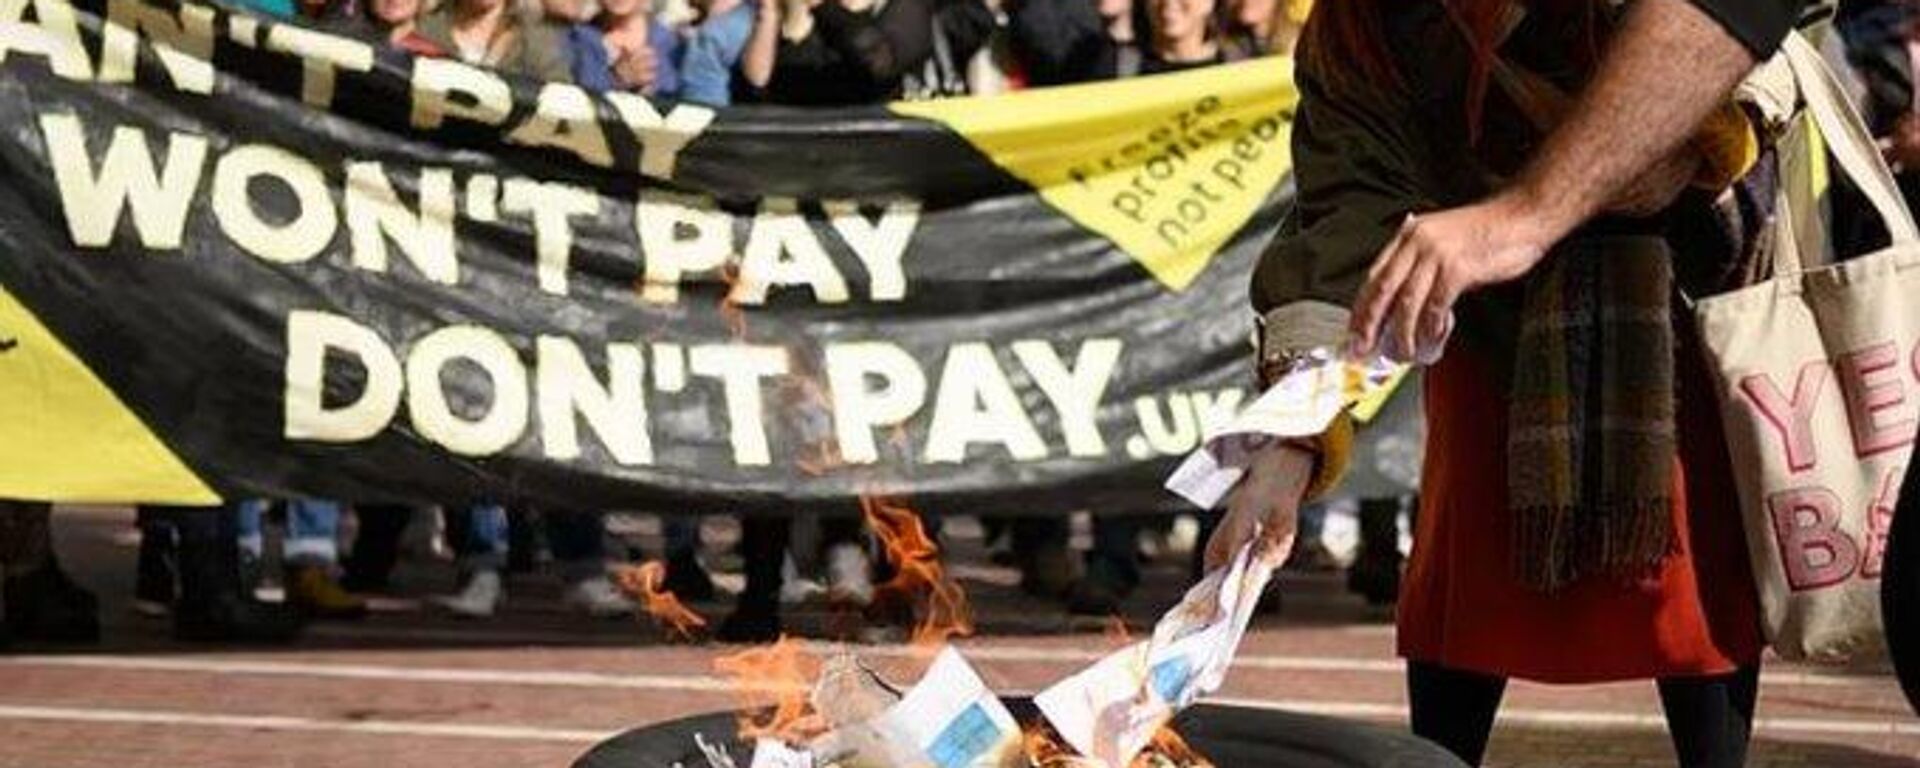 Britanya'da 'Don't Pay UK' (Ödeme Yapma Birleşik Krallık) kampanyasının ülke çapında düzenlediği protesto gösterilerinde yoğun katılım eşliğinde enerji faturaları yakıldı. - Sputnik Türkiye, 1920, 02.10.2022